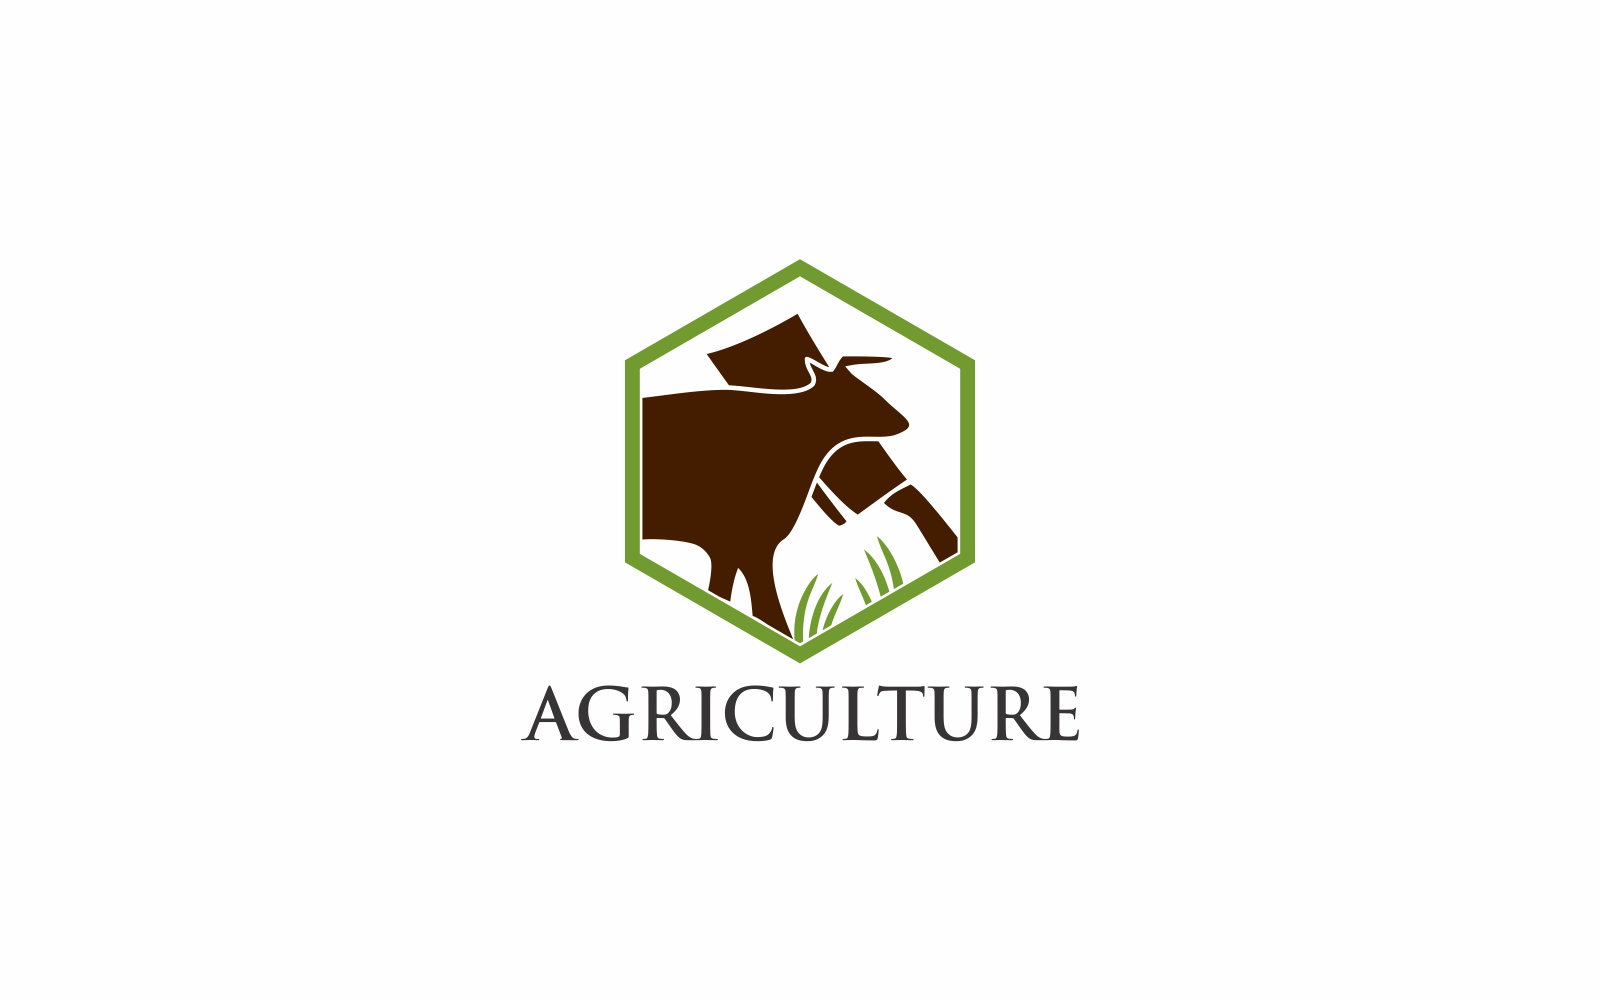 Kit Graphique #143155 Agriculture Domaine Divers Modles Web - Logo template Preview